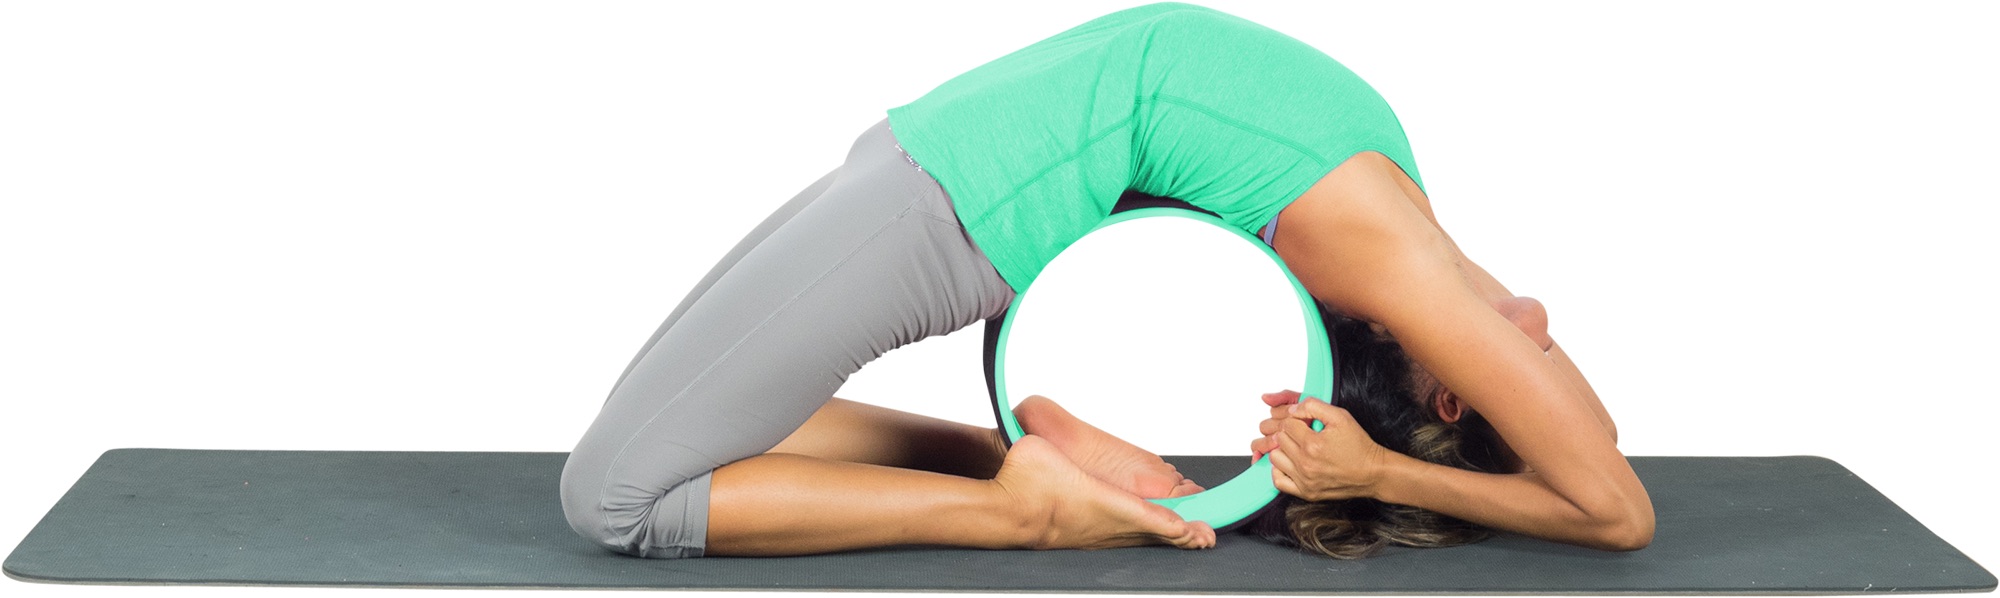 Ruota dellequilibrio Yoga Yoga Cerchio Yoga Stretching Wheel Non Slip Ring Bend & Stretch Roller Flexibility Flexibility Aid Yoga Wheel Pink, 